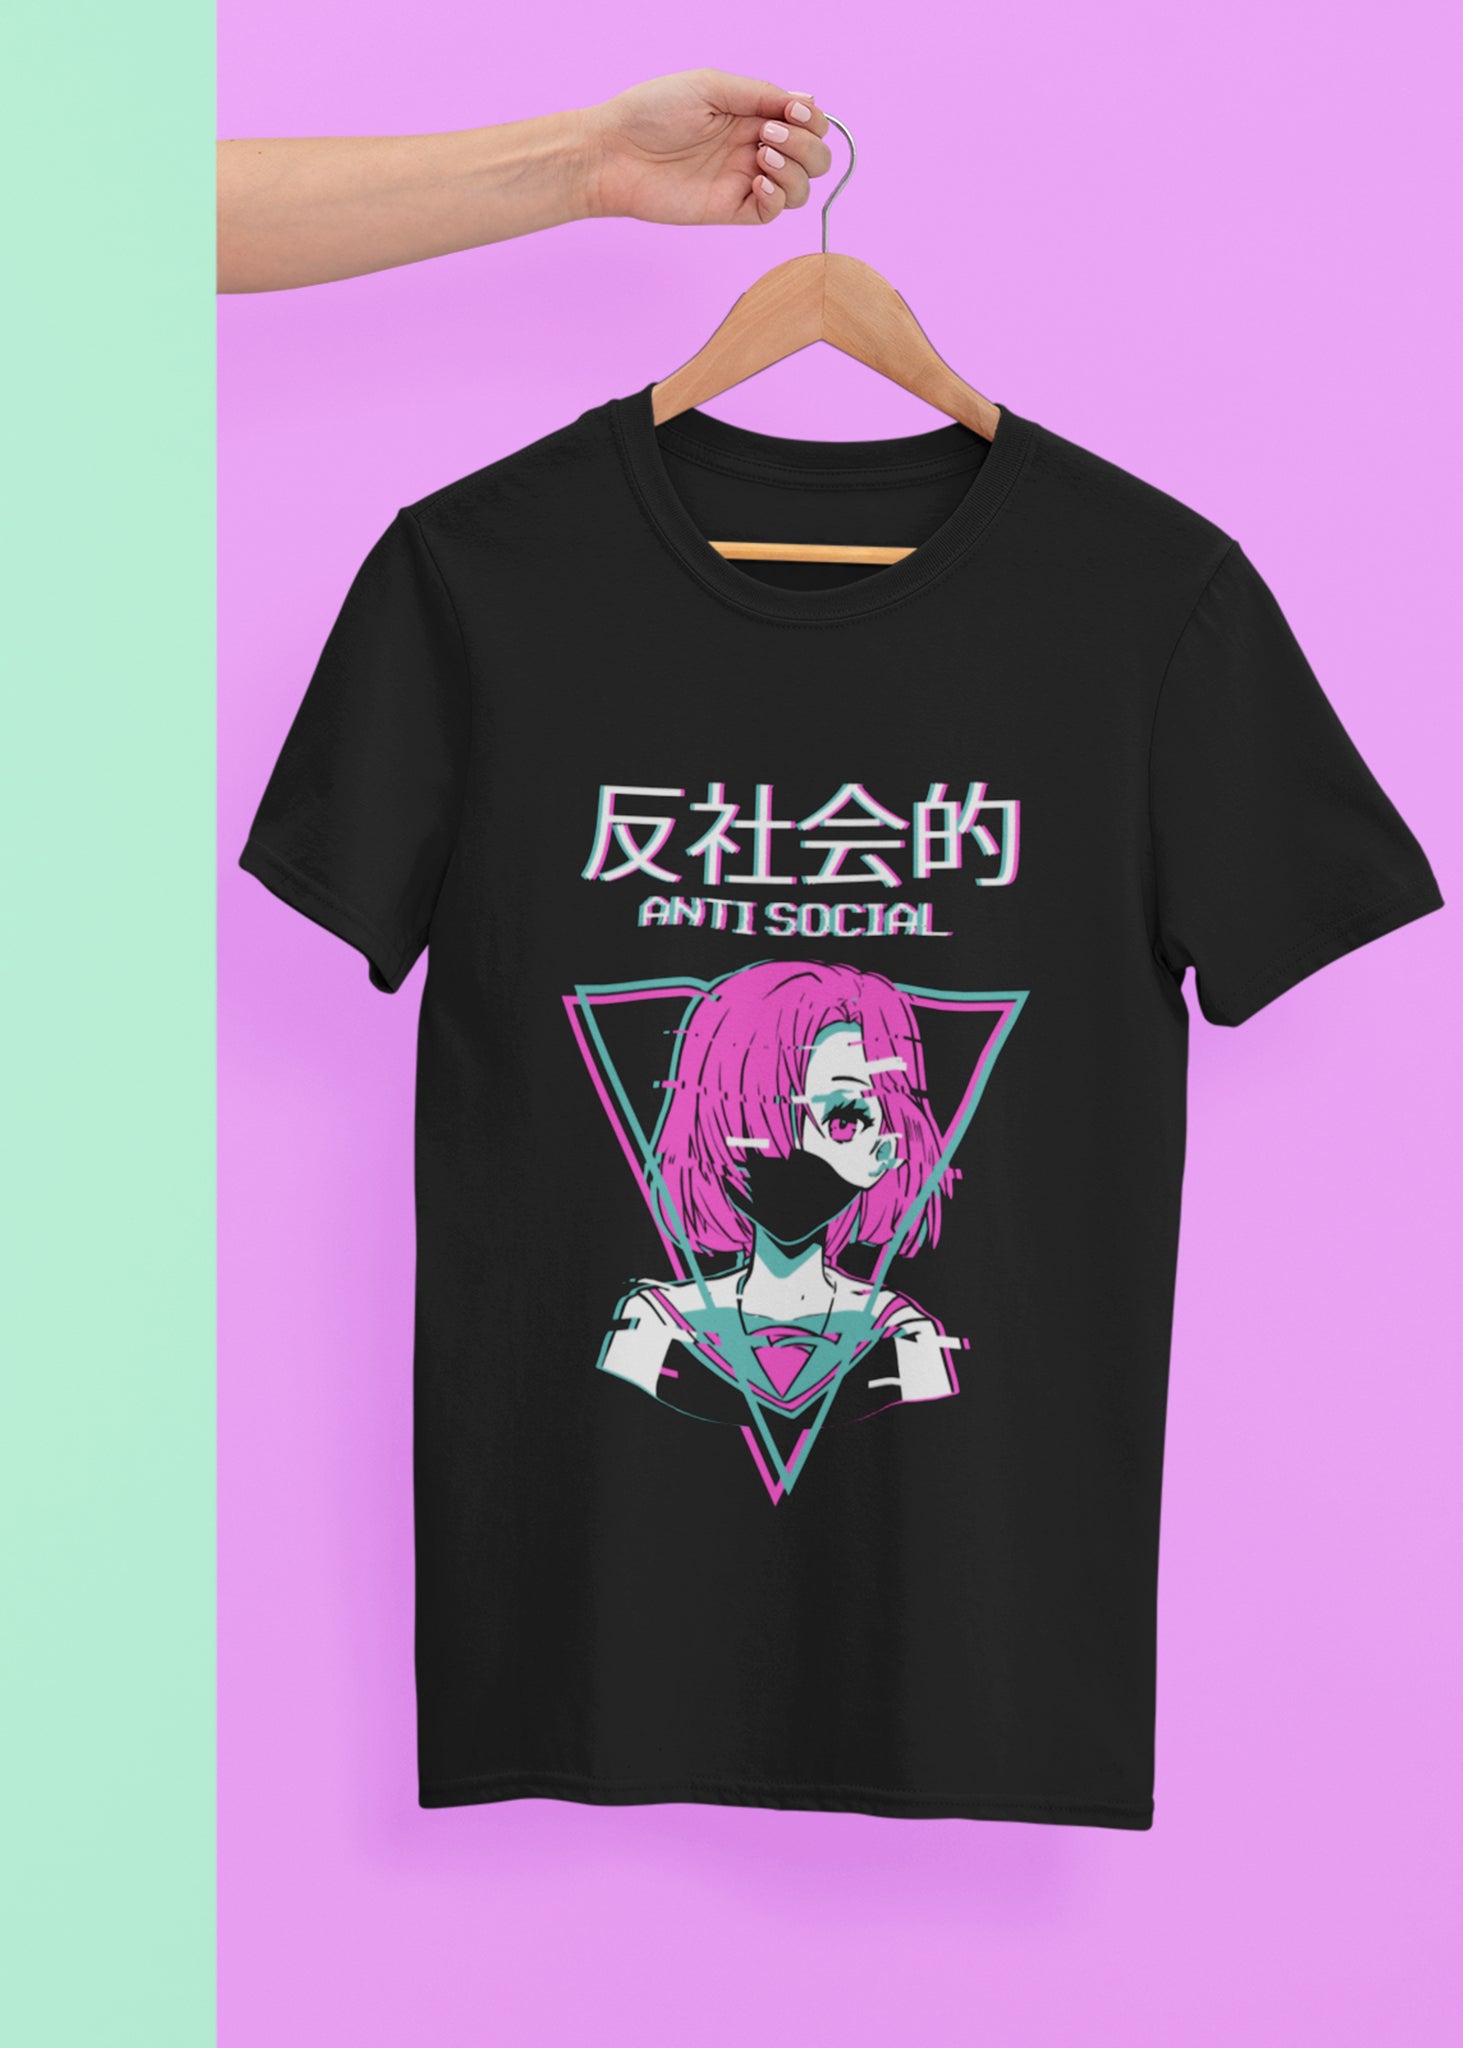 Antisocial Vaporwave Anime Girl Japanese T-Shirt